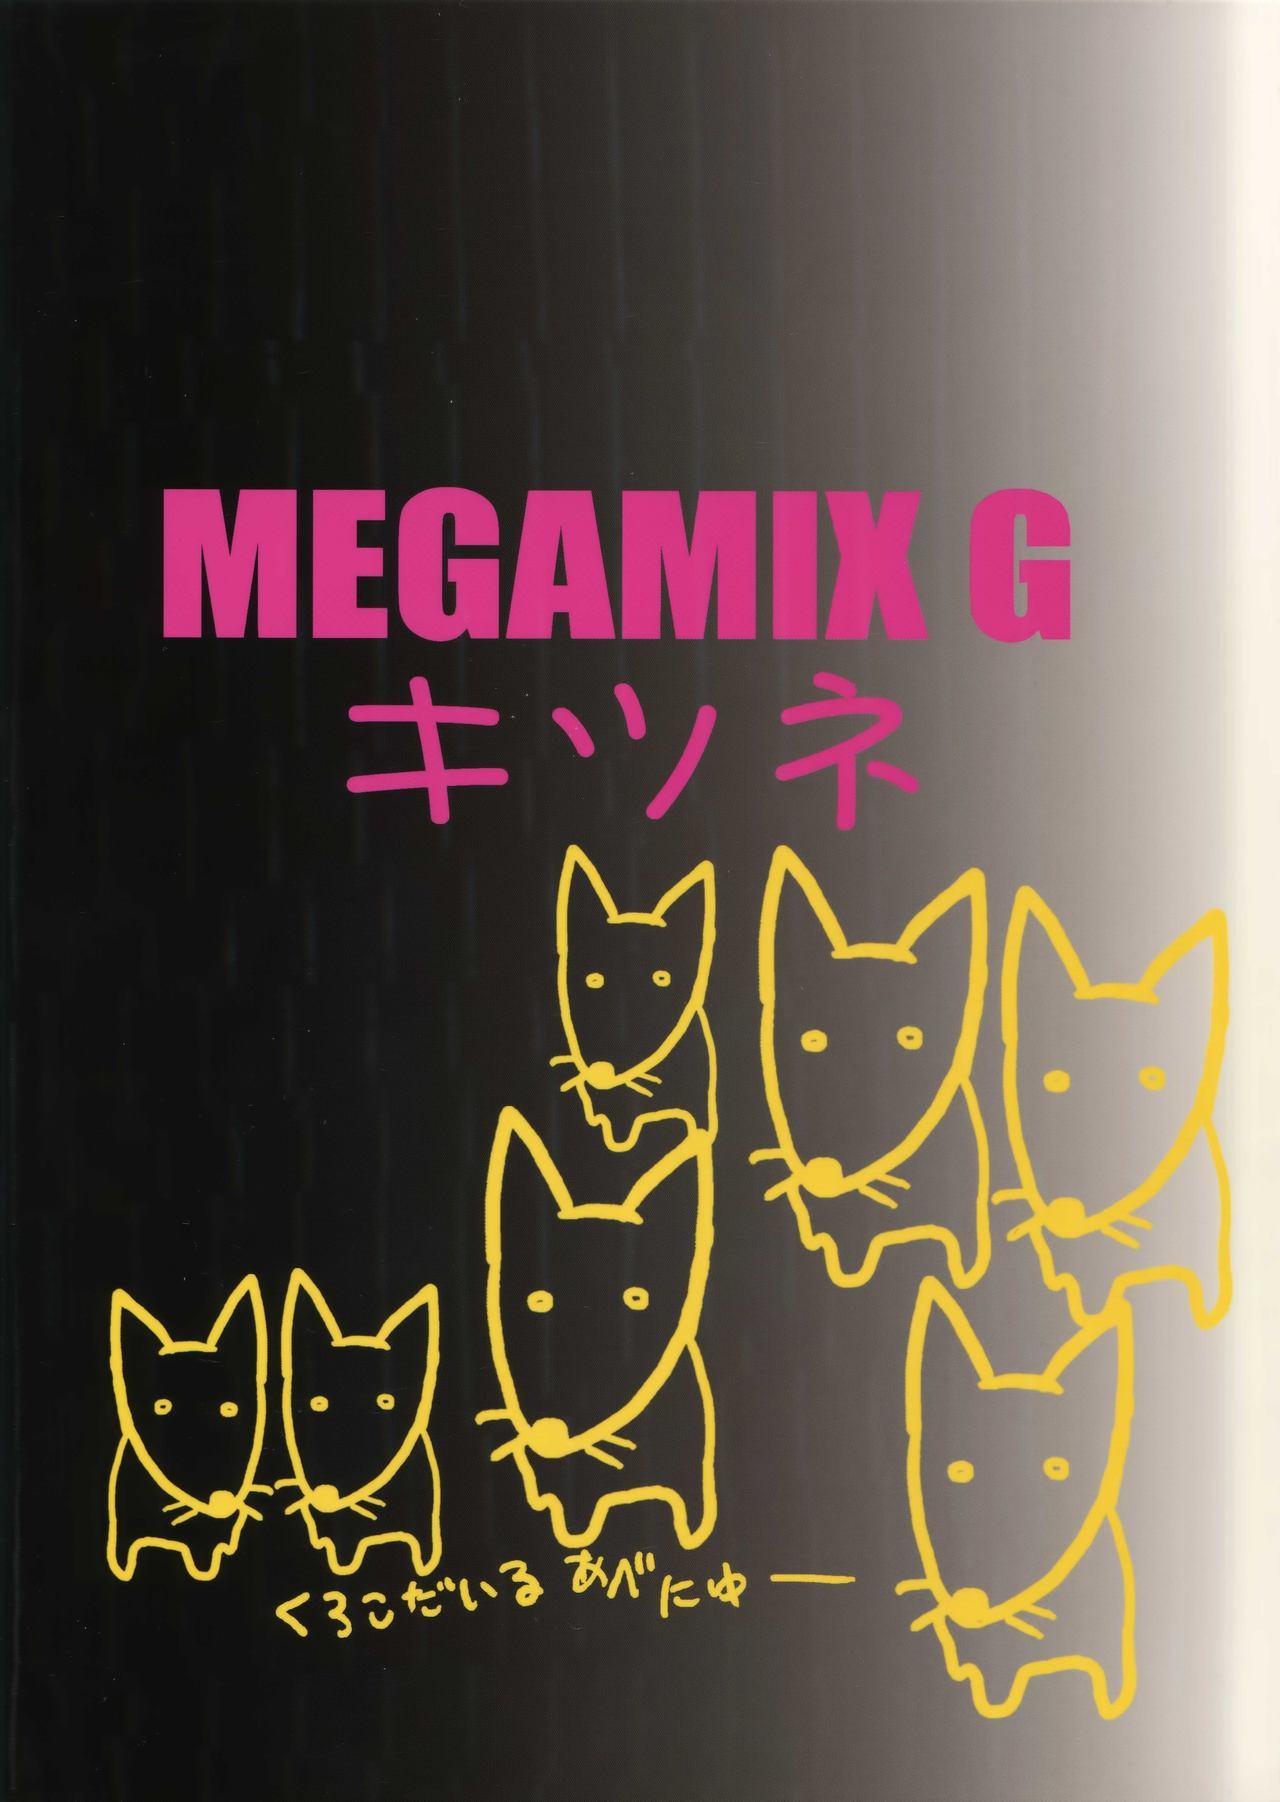 Megamix G Kitsune 59